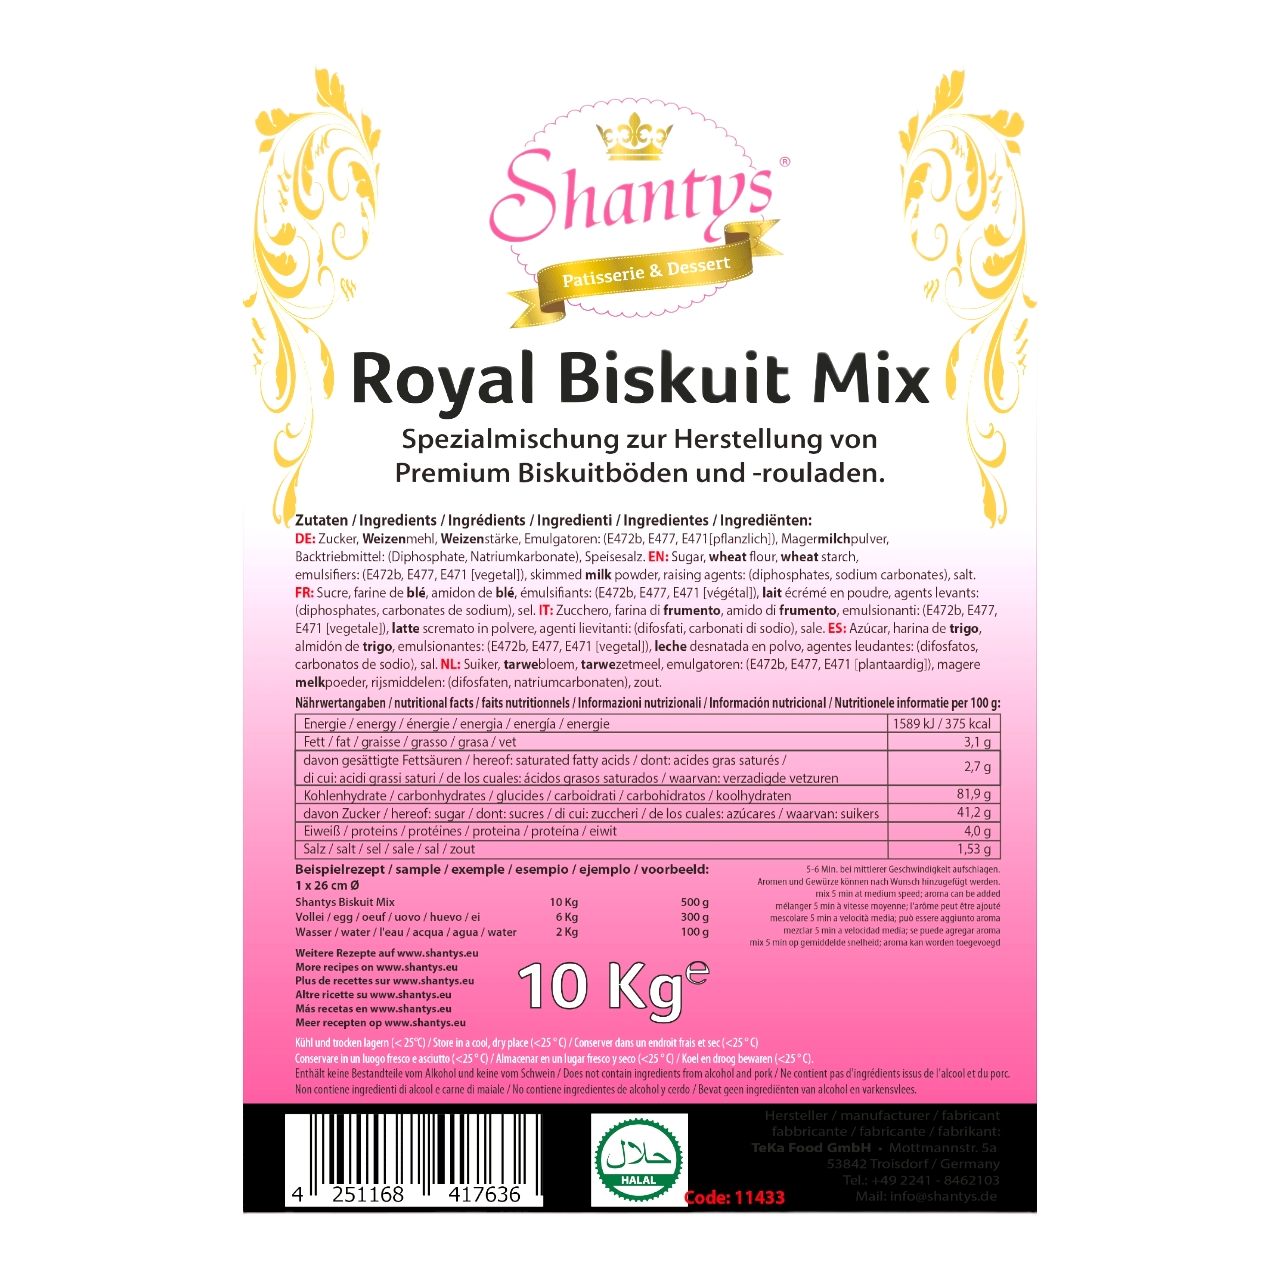 Royal Biskuit Mix - 10 Kg - Shantys